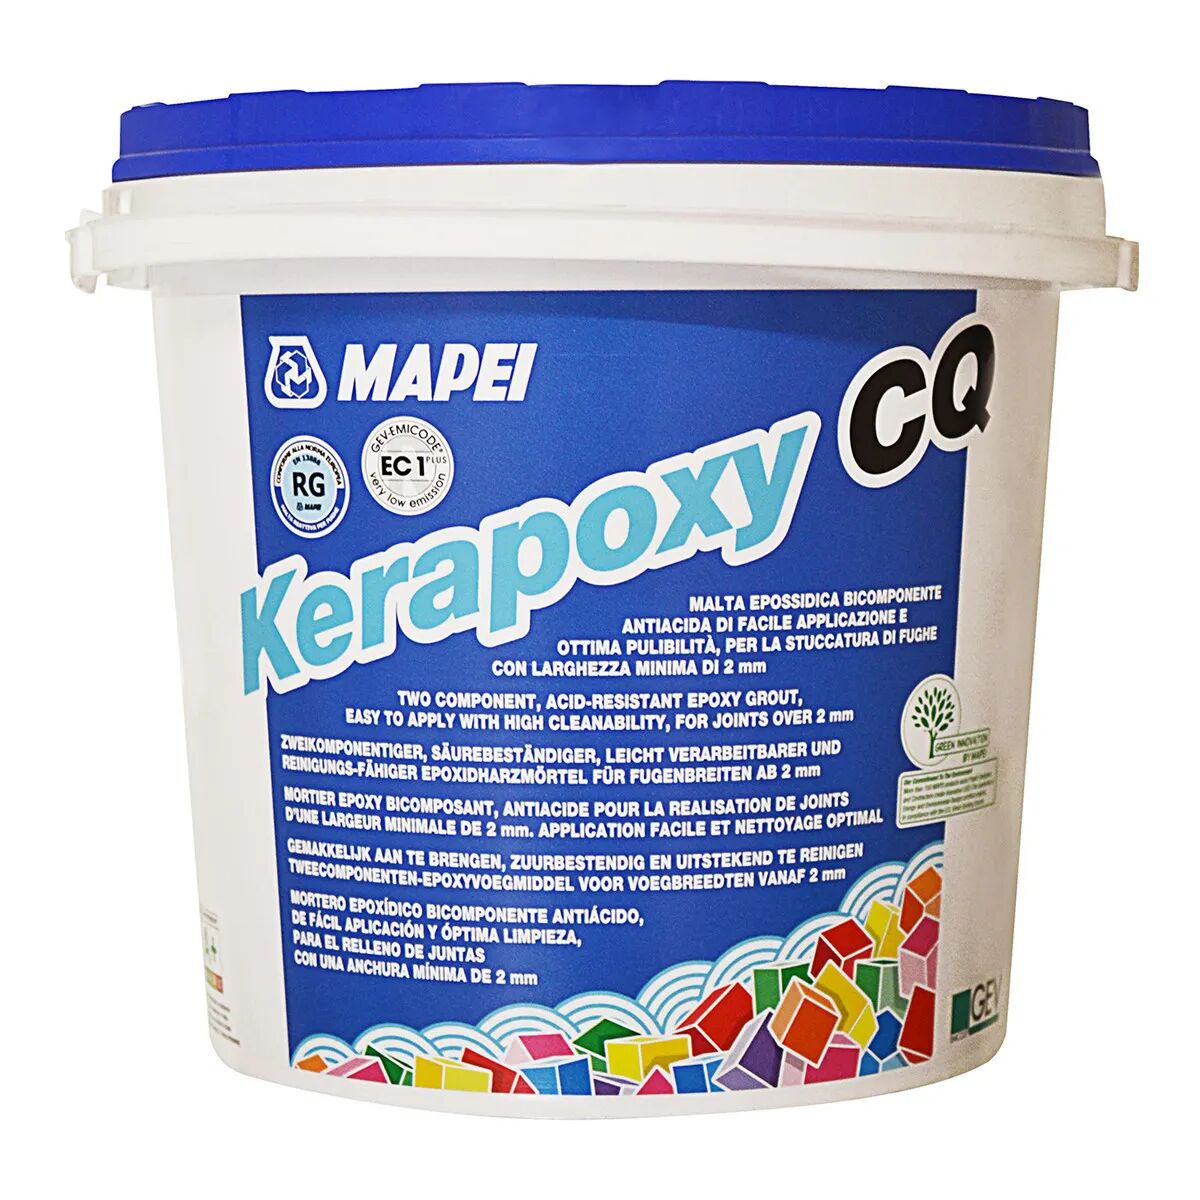 MAPEI Stucco Kerapoxy Cq 113  3 Kg Grigio Cemento